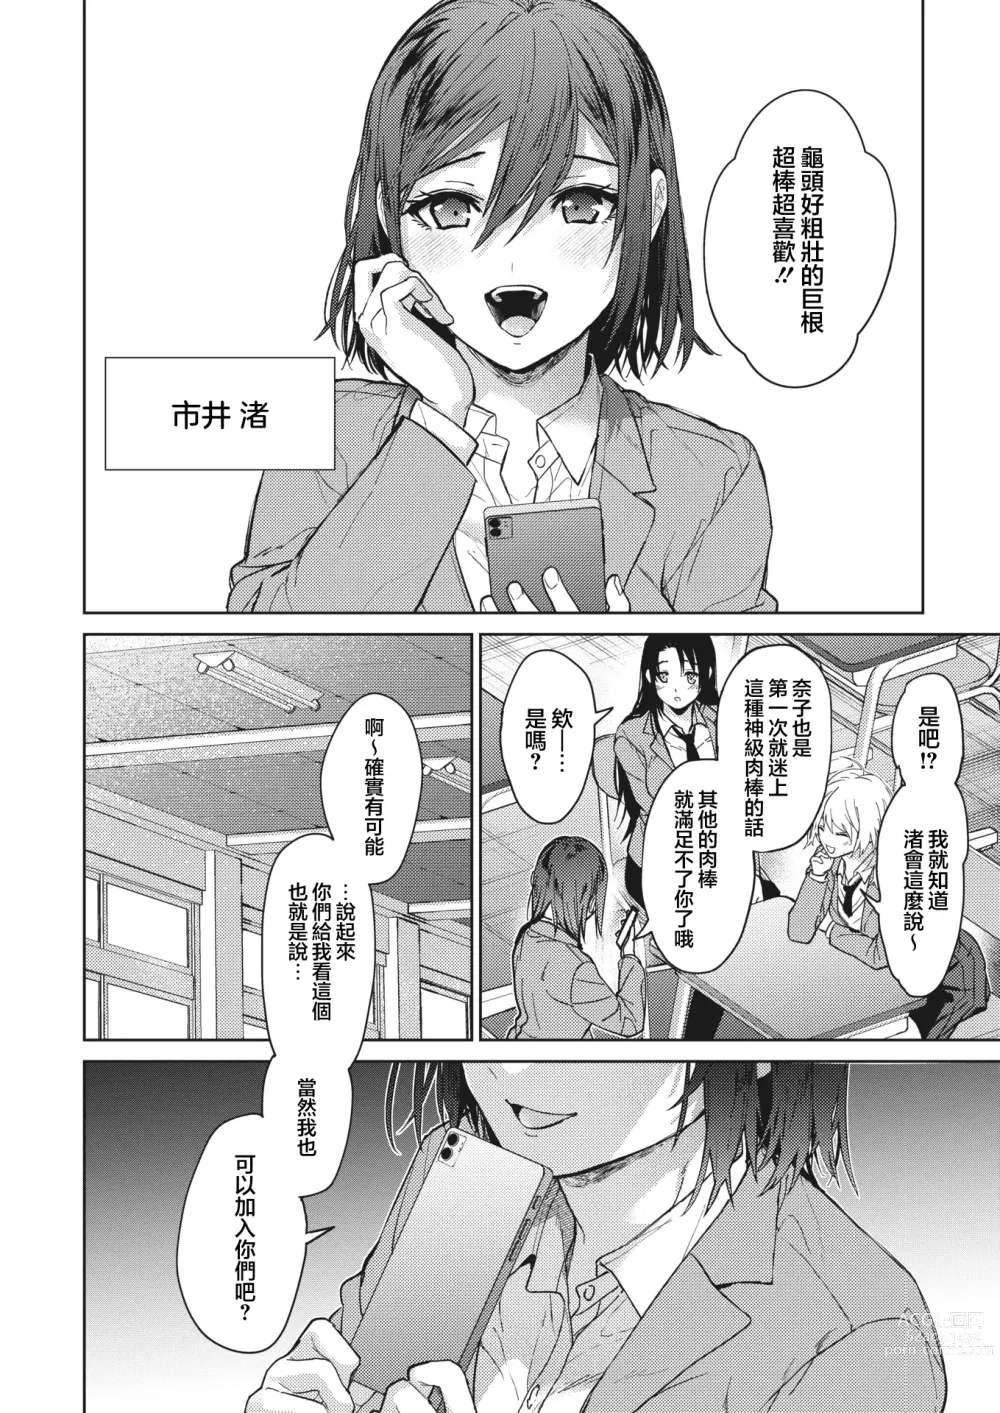 Page 39 of manga Onee-chan-tachi to Issho ni Zenpen